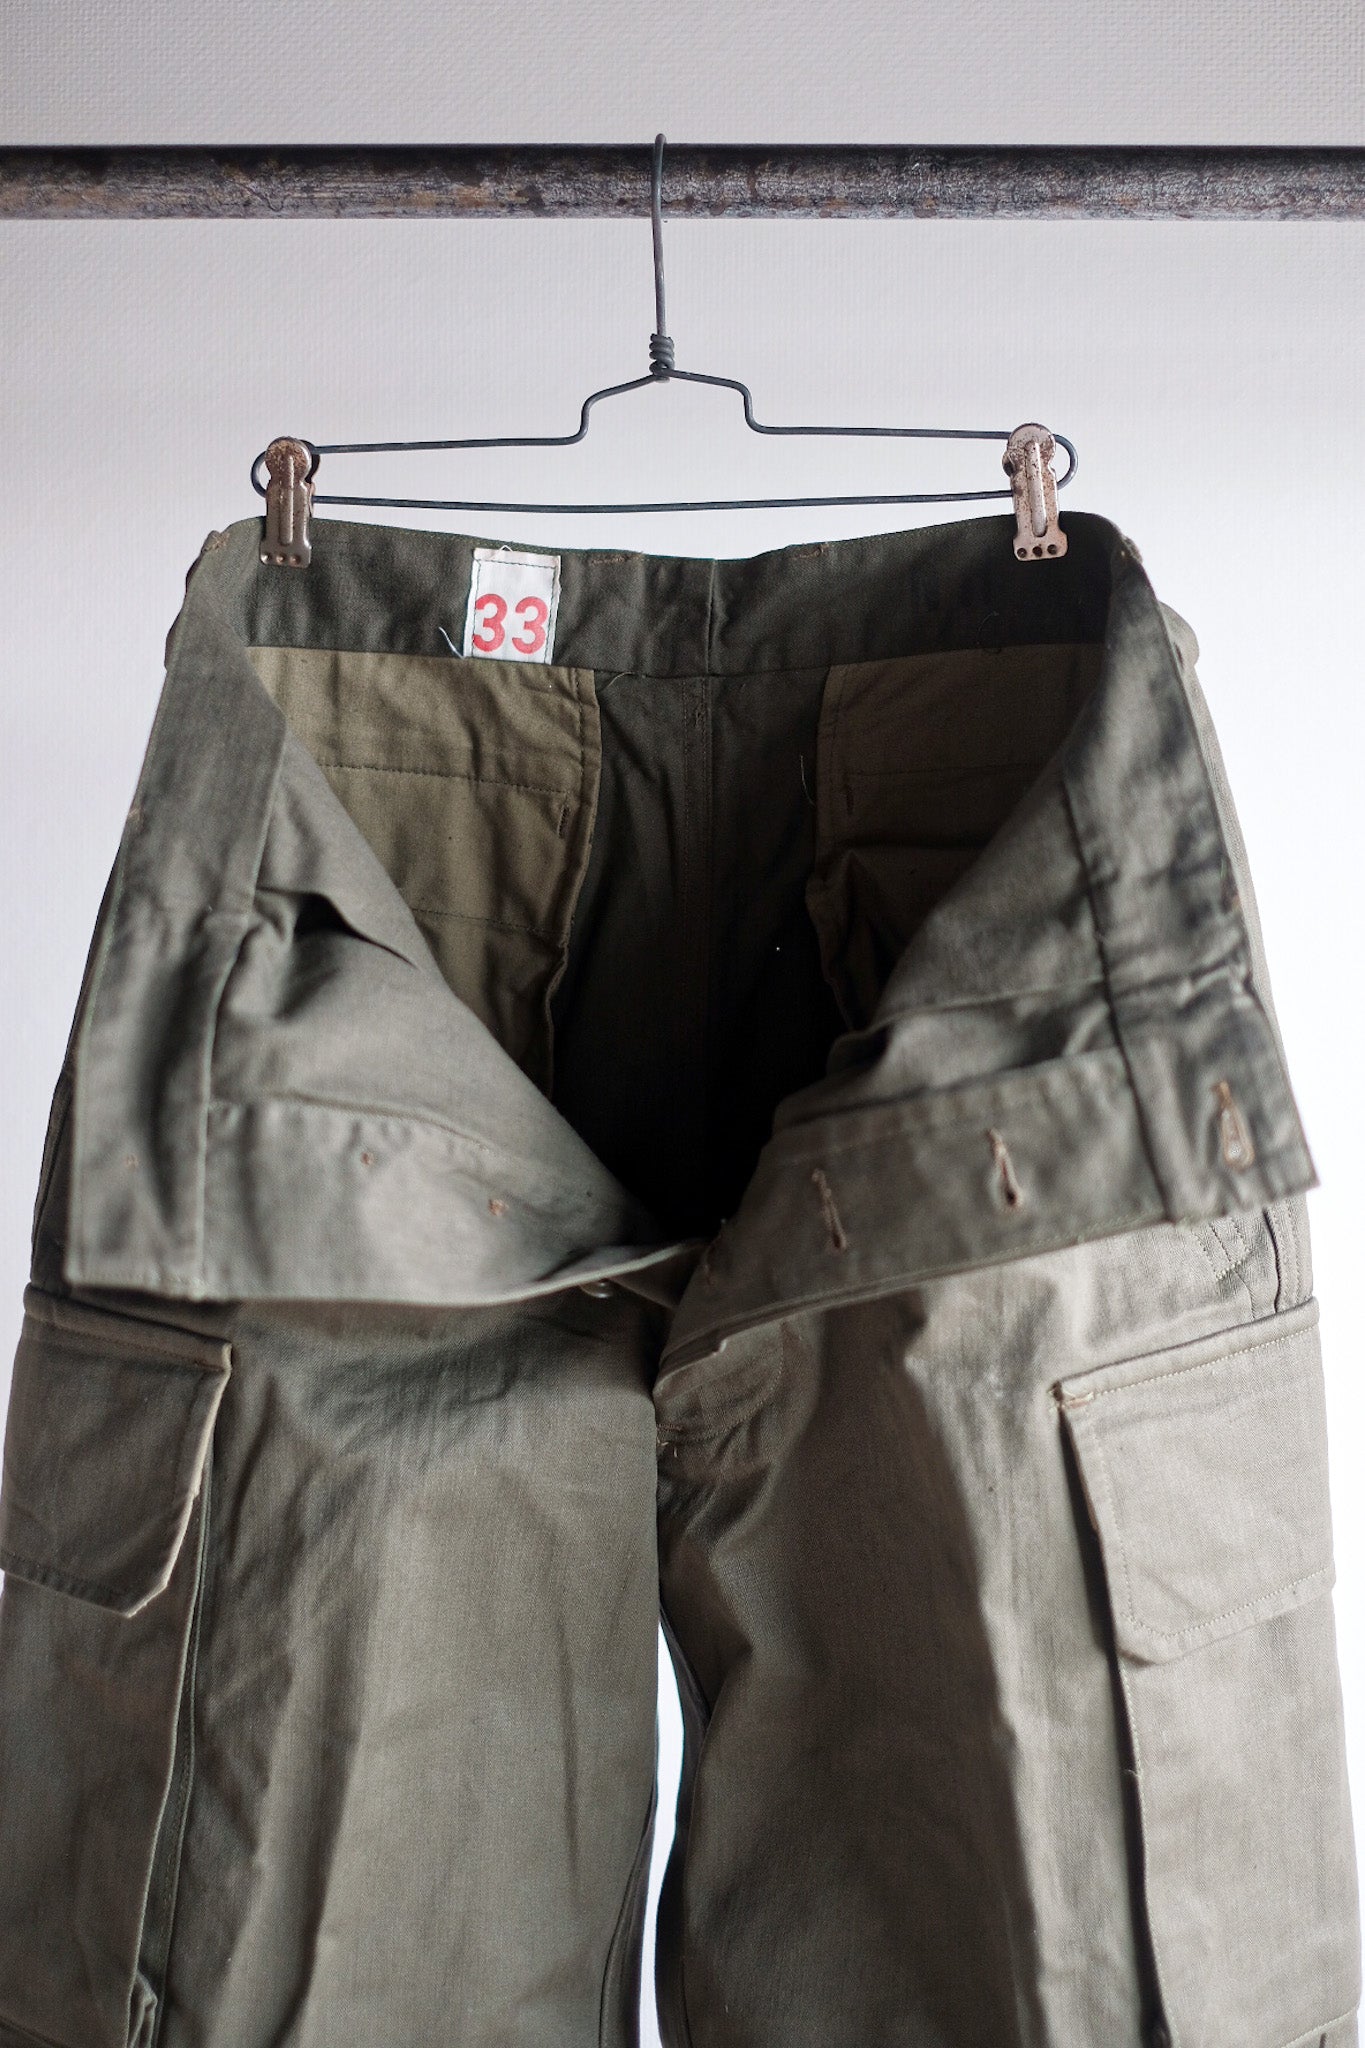 [~ 60's] Taille des pantalons de terrain de l'armée française M47.33 "Stock mort"